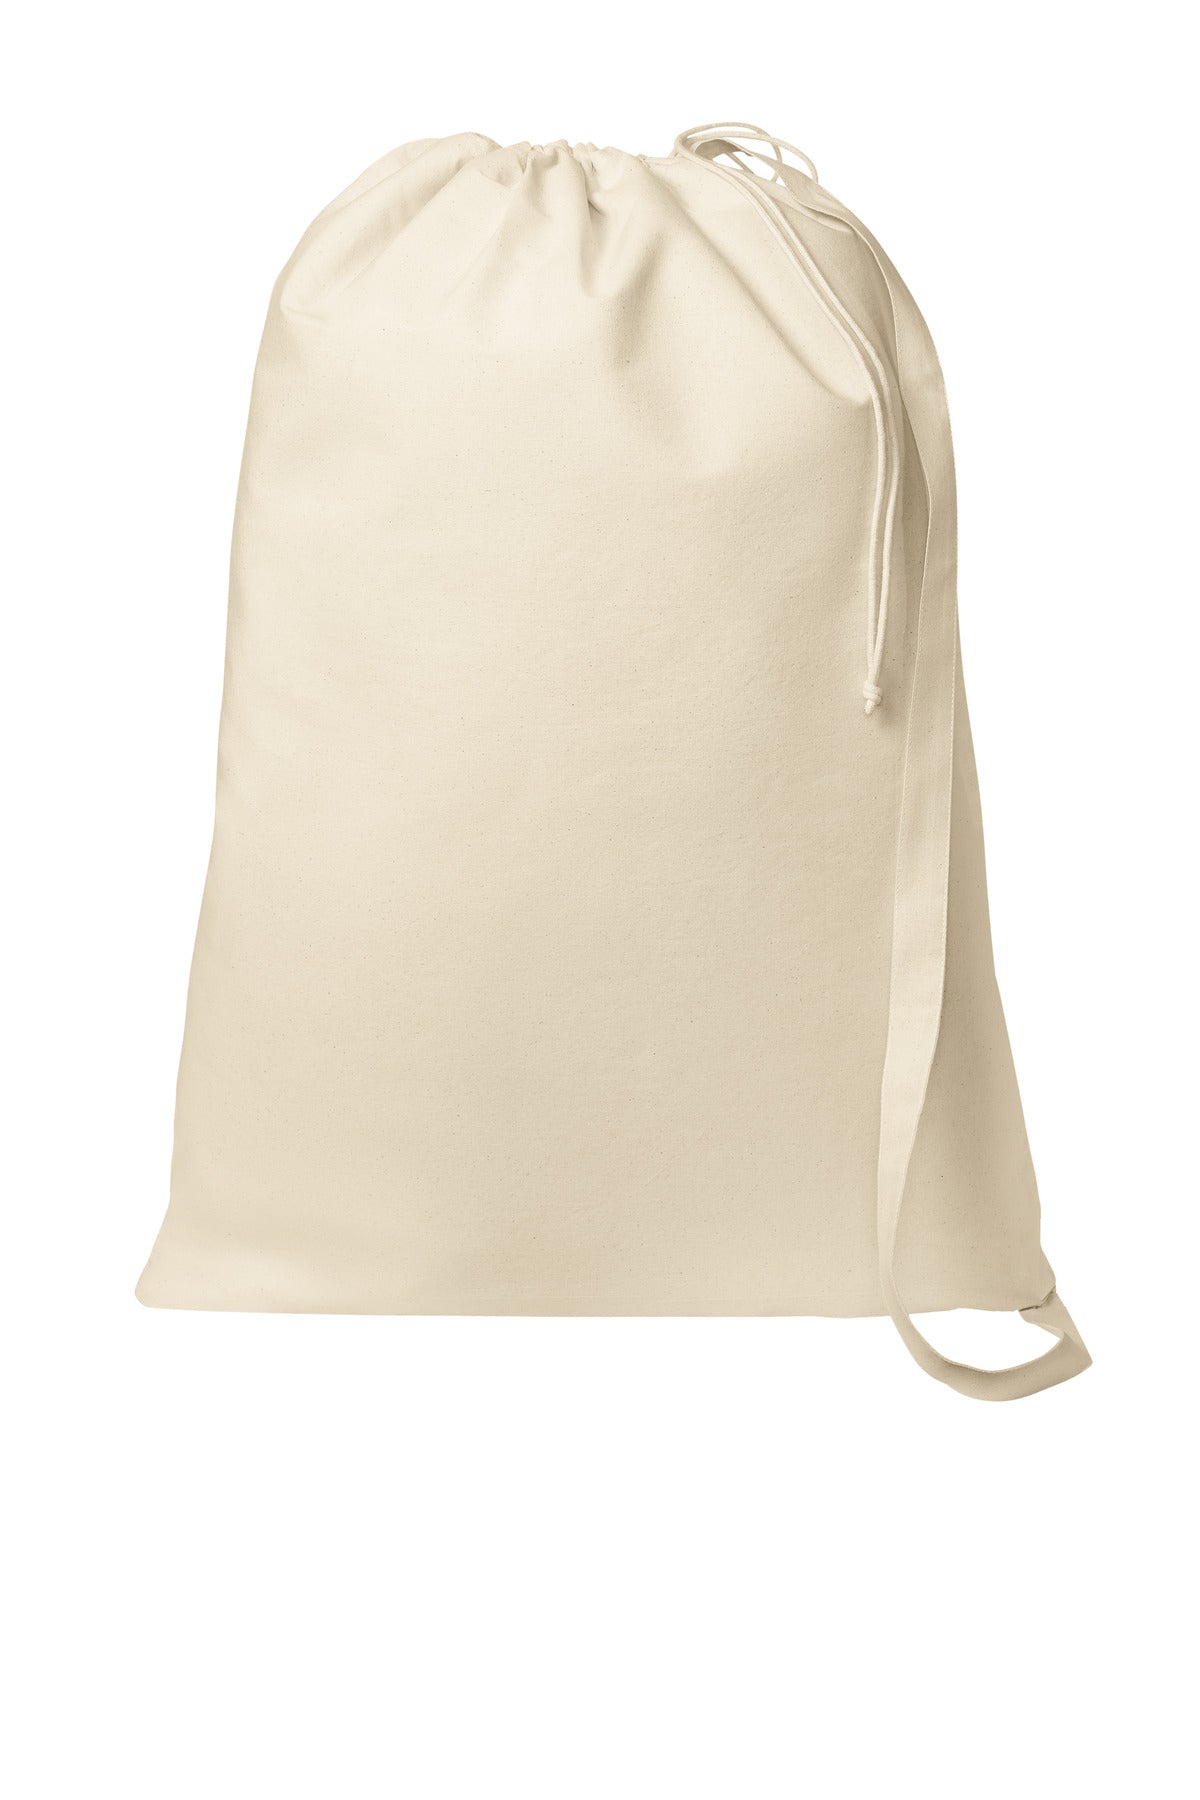 Port Authority® Core Cotton Laundry Bag BG0850 - DFW Impression